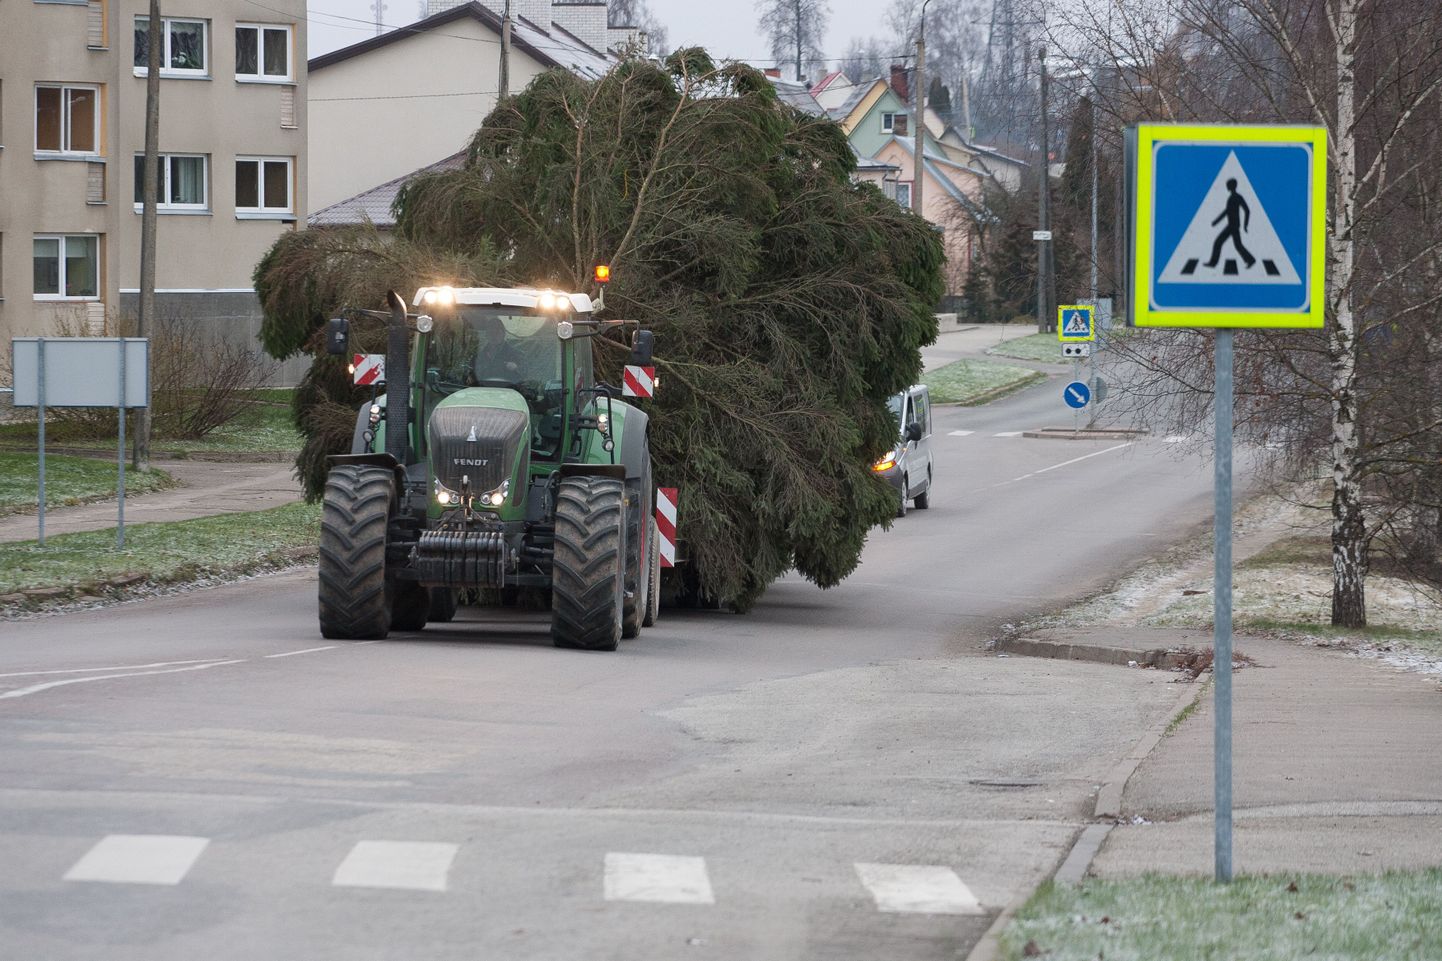 Jõulupuu linna toomise ajaks seisati ringristmikul liiklus ning eemaldati ajutiselt ülekäiguraja märke, et need kaharat puud ei rikuks.